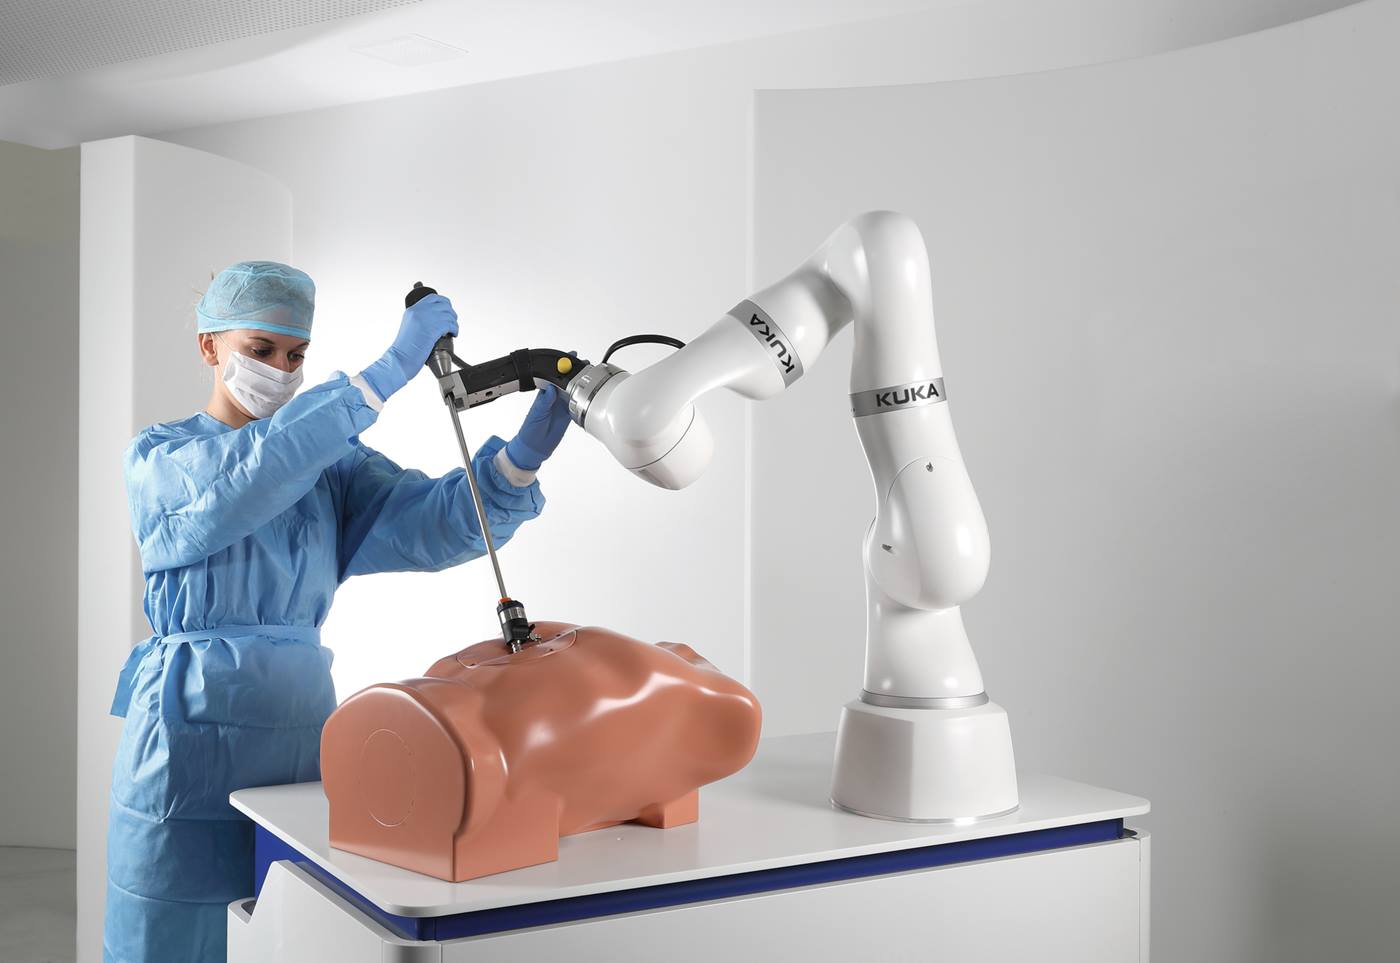 Robotik in der Medizin